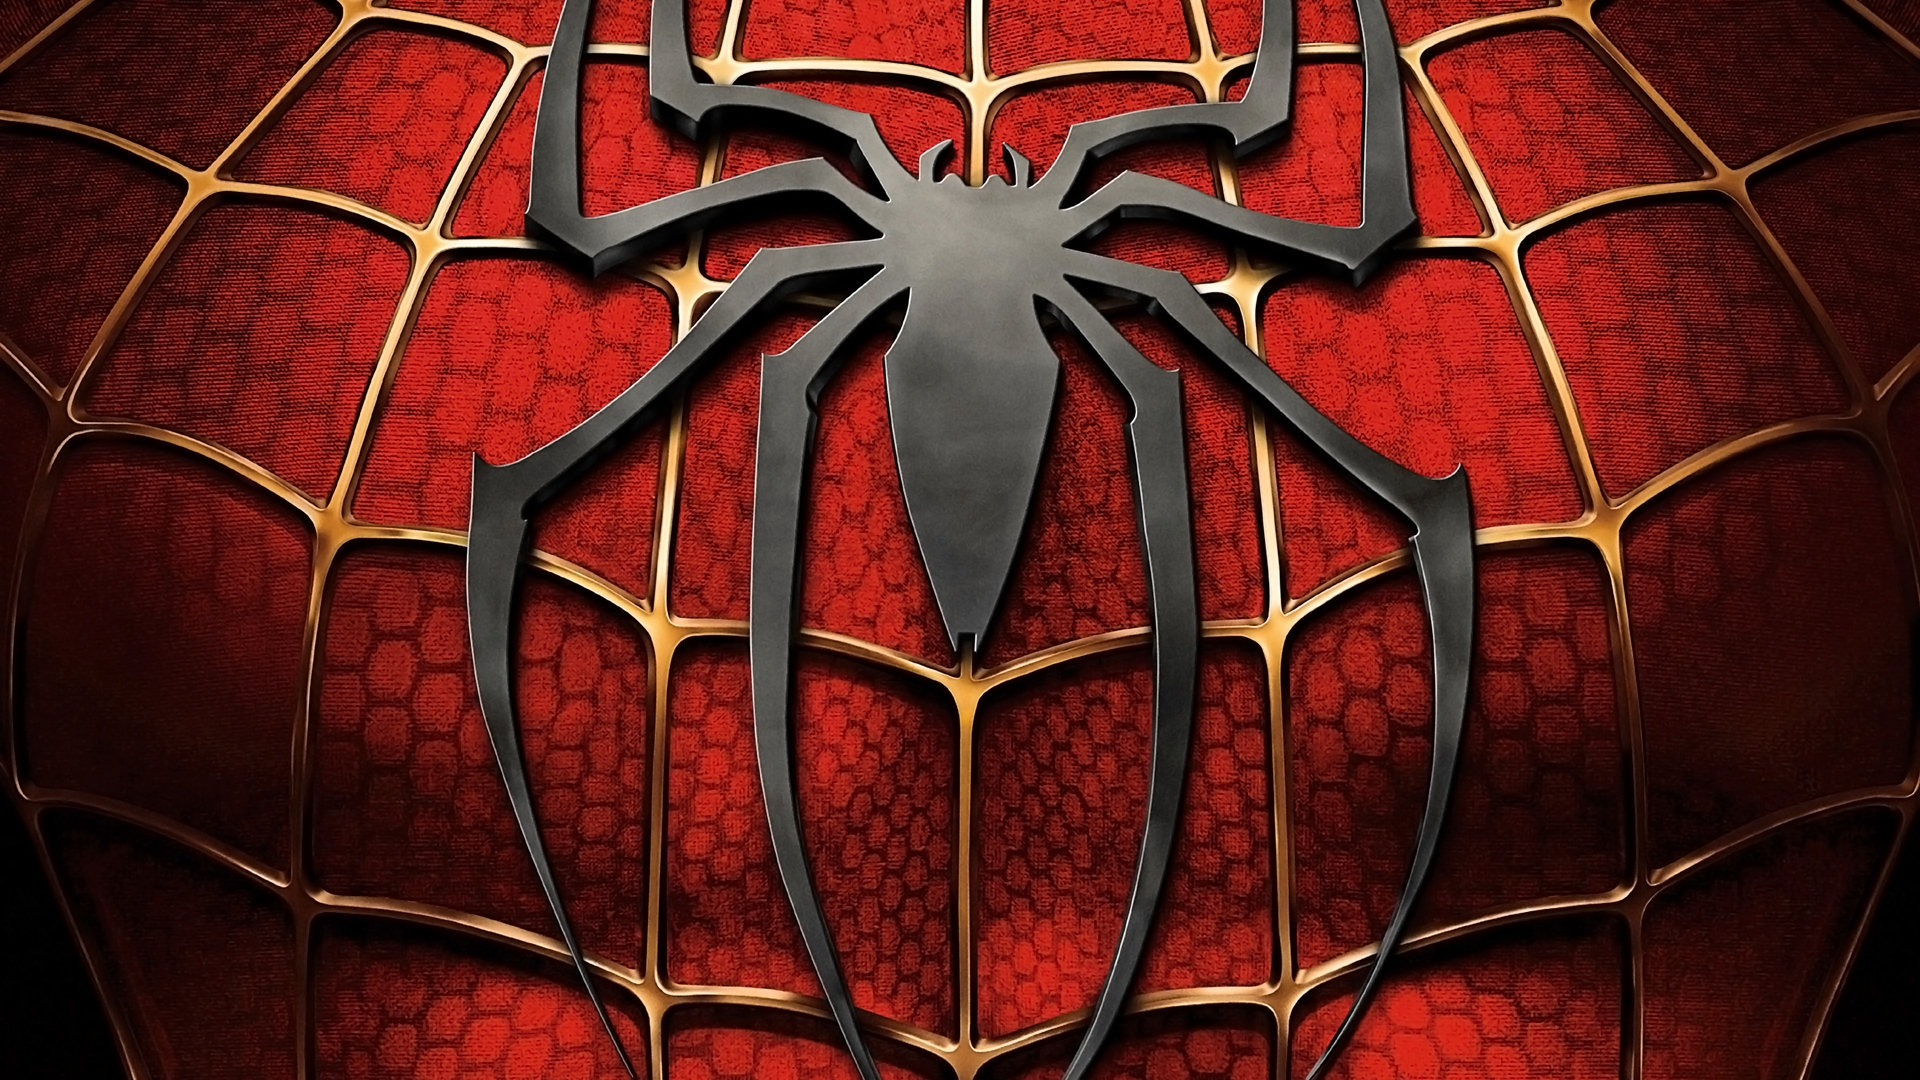 99+ hình nền Spider Man - hình nền người nhện cực nét dành cho máy tính, điện thoại